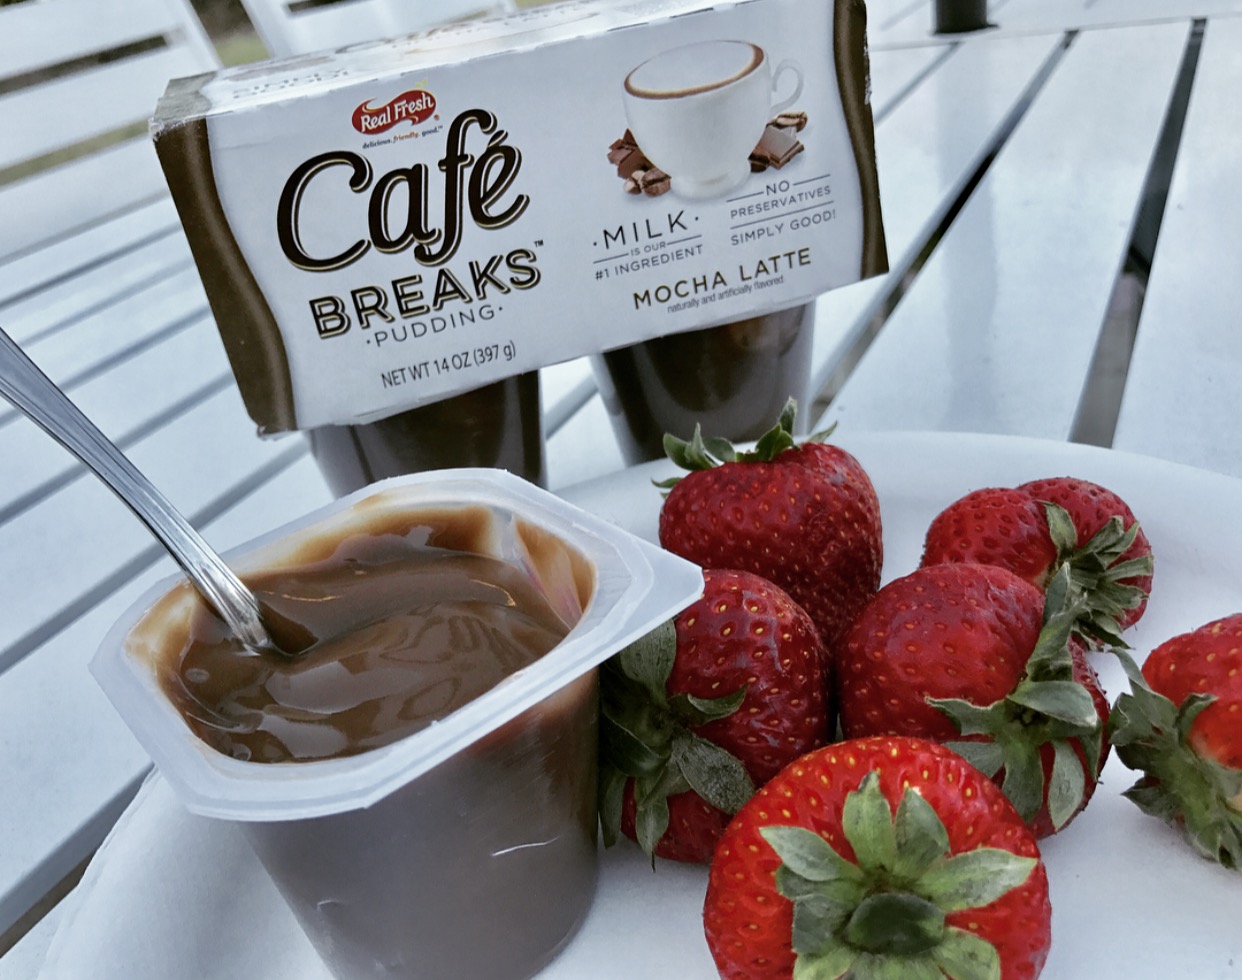 #lovecafebreaks #CafeBreaksMom #food #foodie #ad